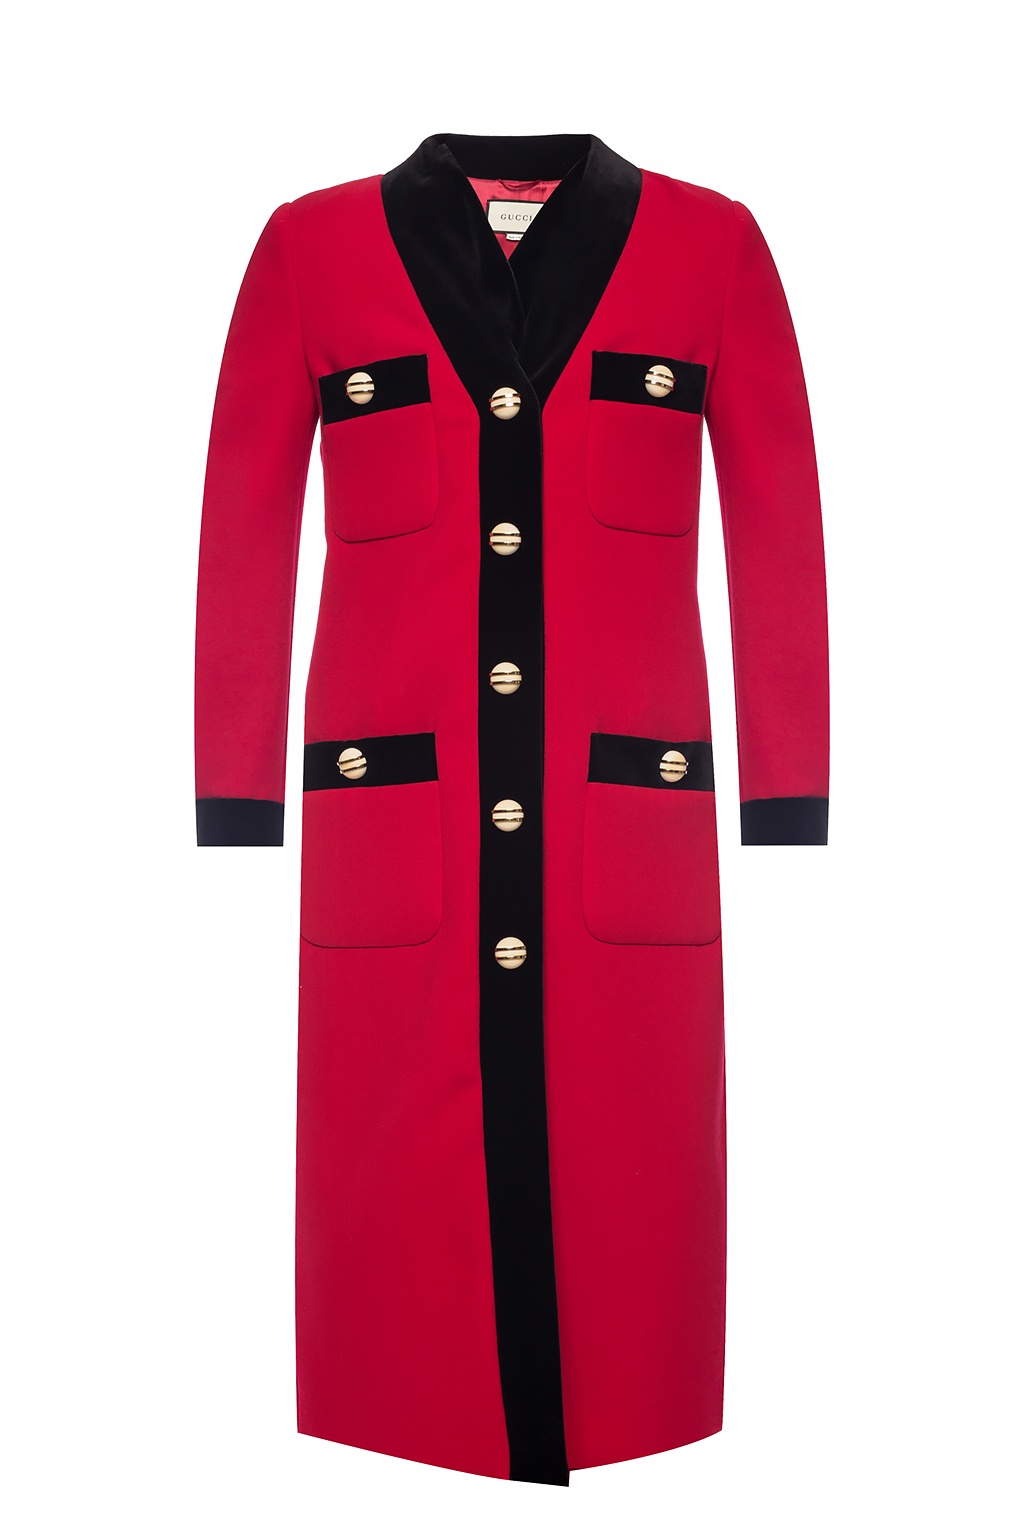 Gucci Velvet-trimmed coat | Women's Clothing | Vitkac